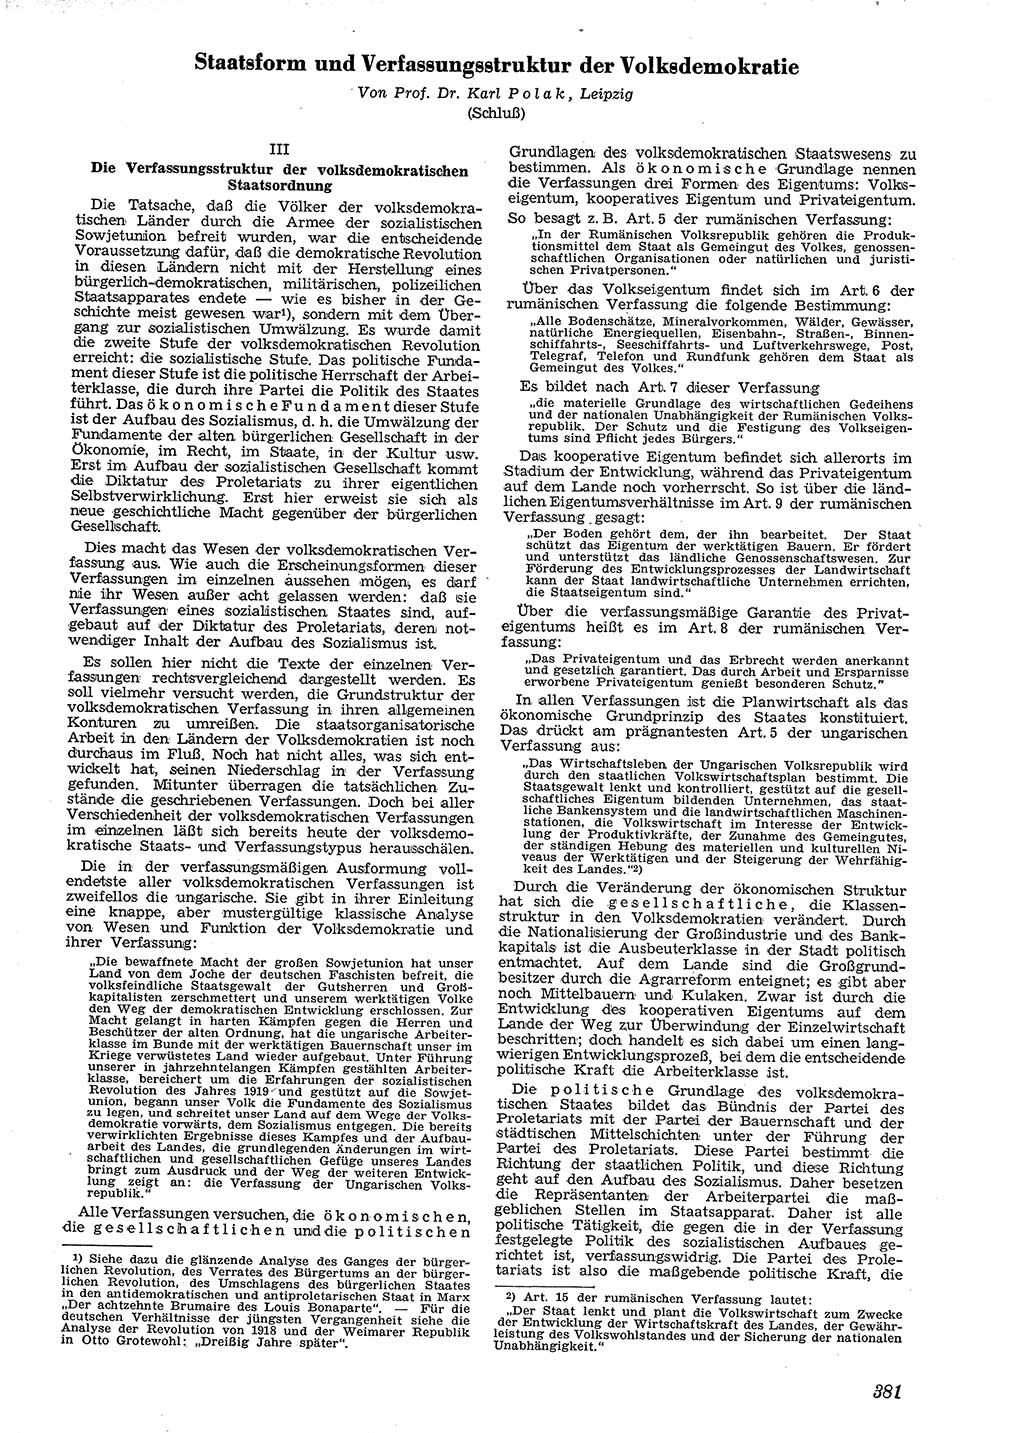 Neue Justiz (NJ), Zeitschrift für Recht und Rechtswissenschaft [Deutsche Demokratische Republik (DDR)], 4. Jahrgang 1950, Seite 381 (NJ DDR 1950, S. 381)